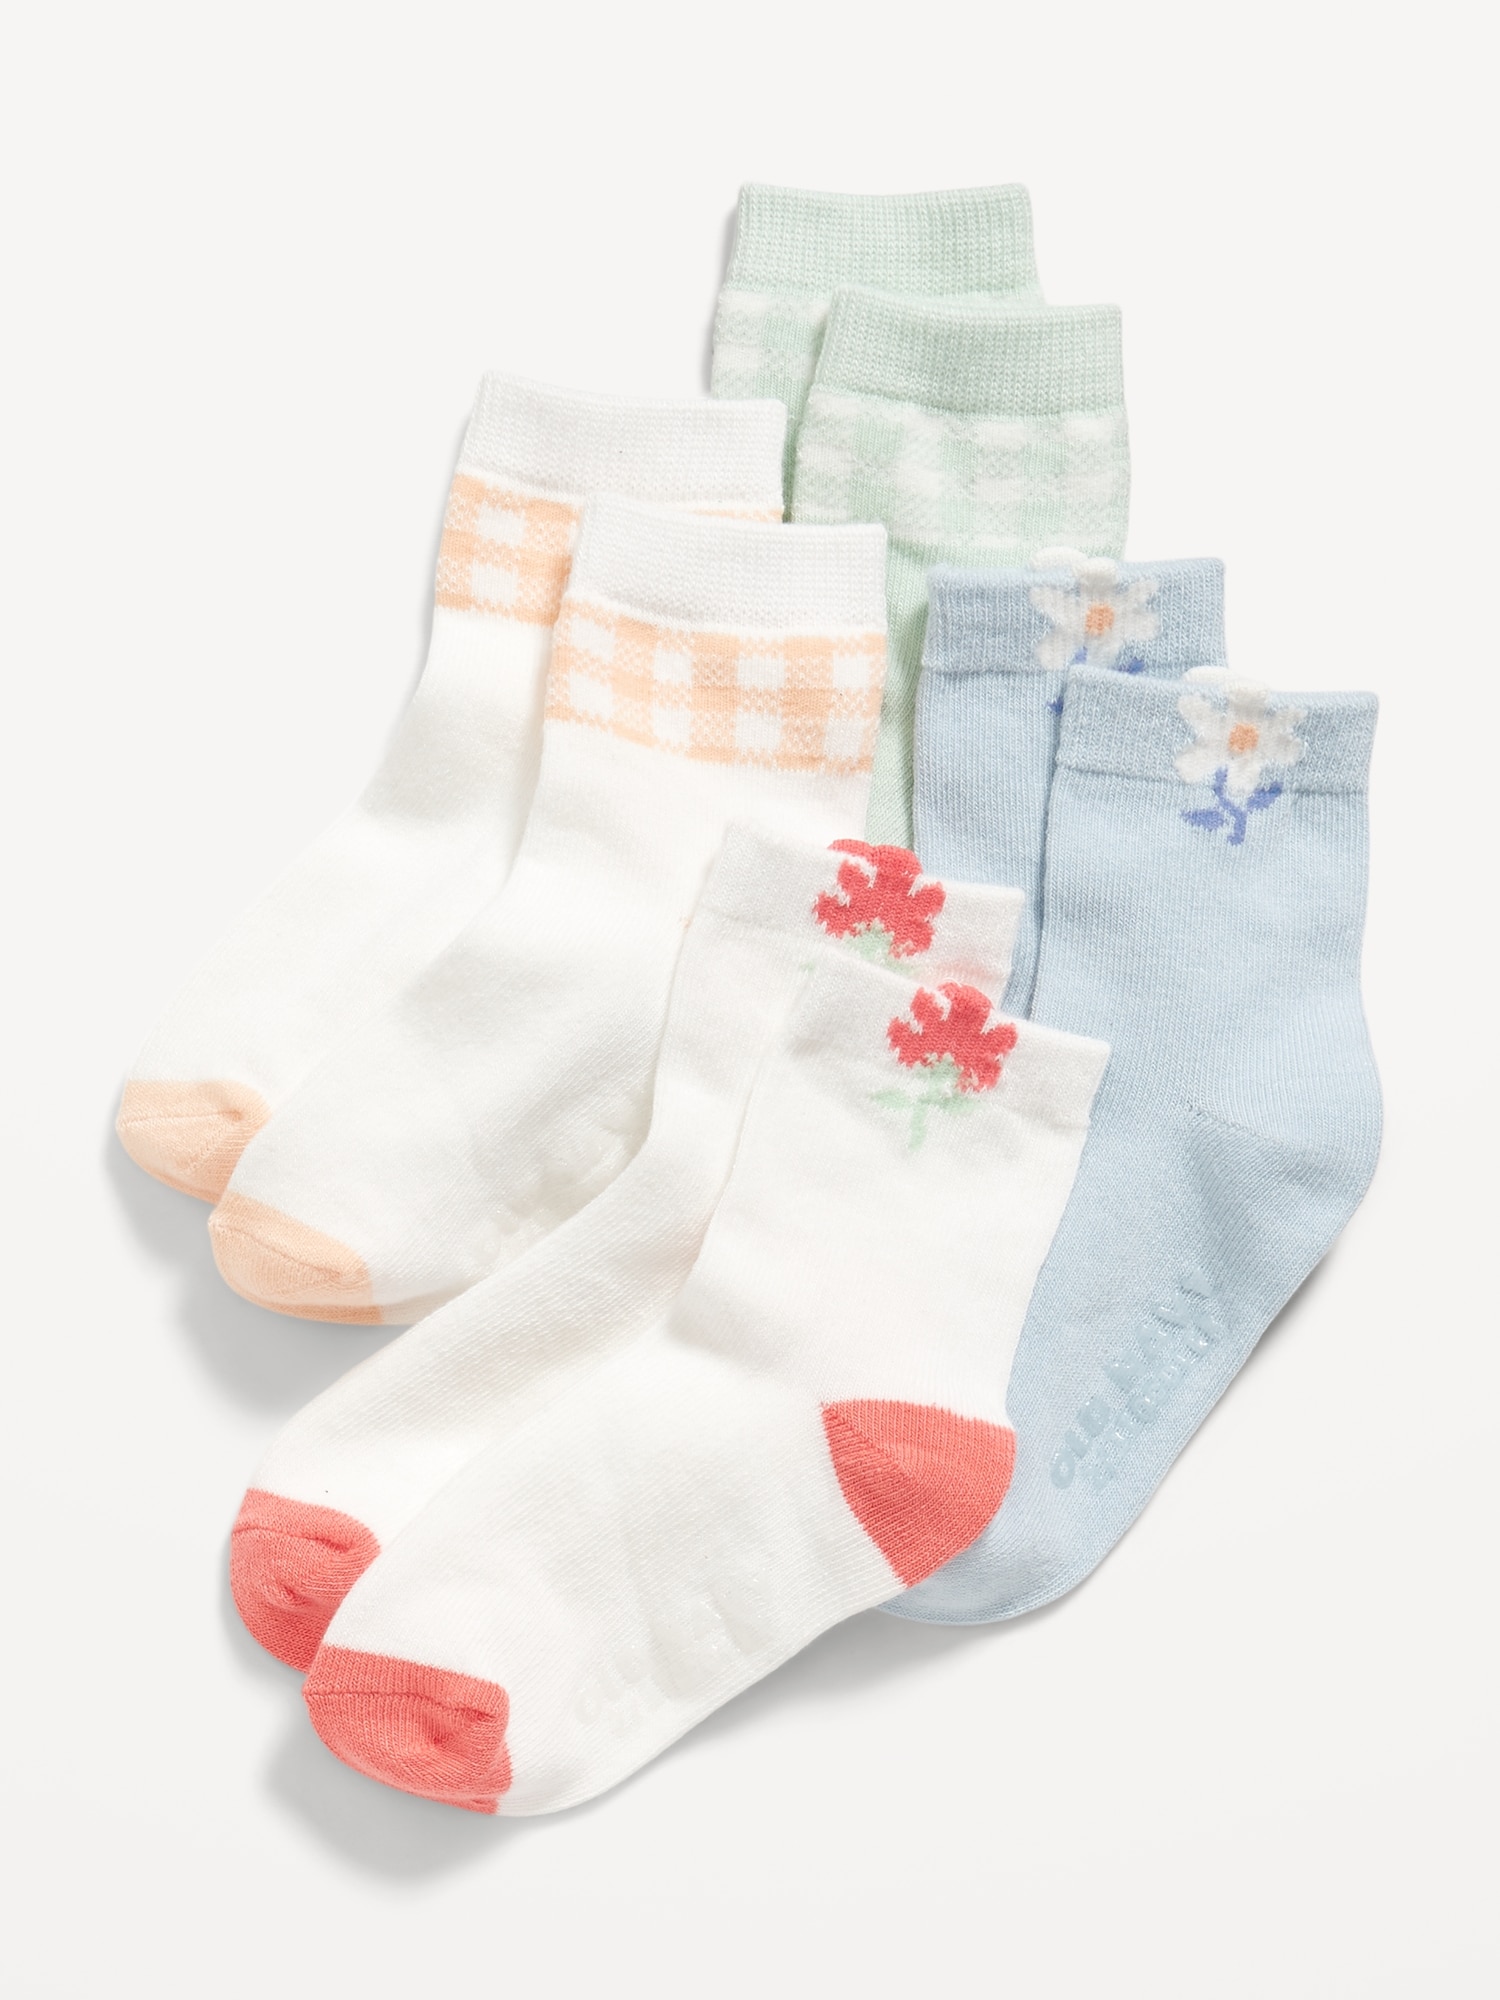 Unisex Crew Socks 4-Pack for Toddler & Baby